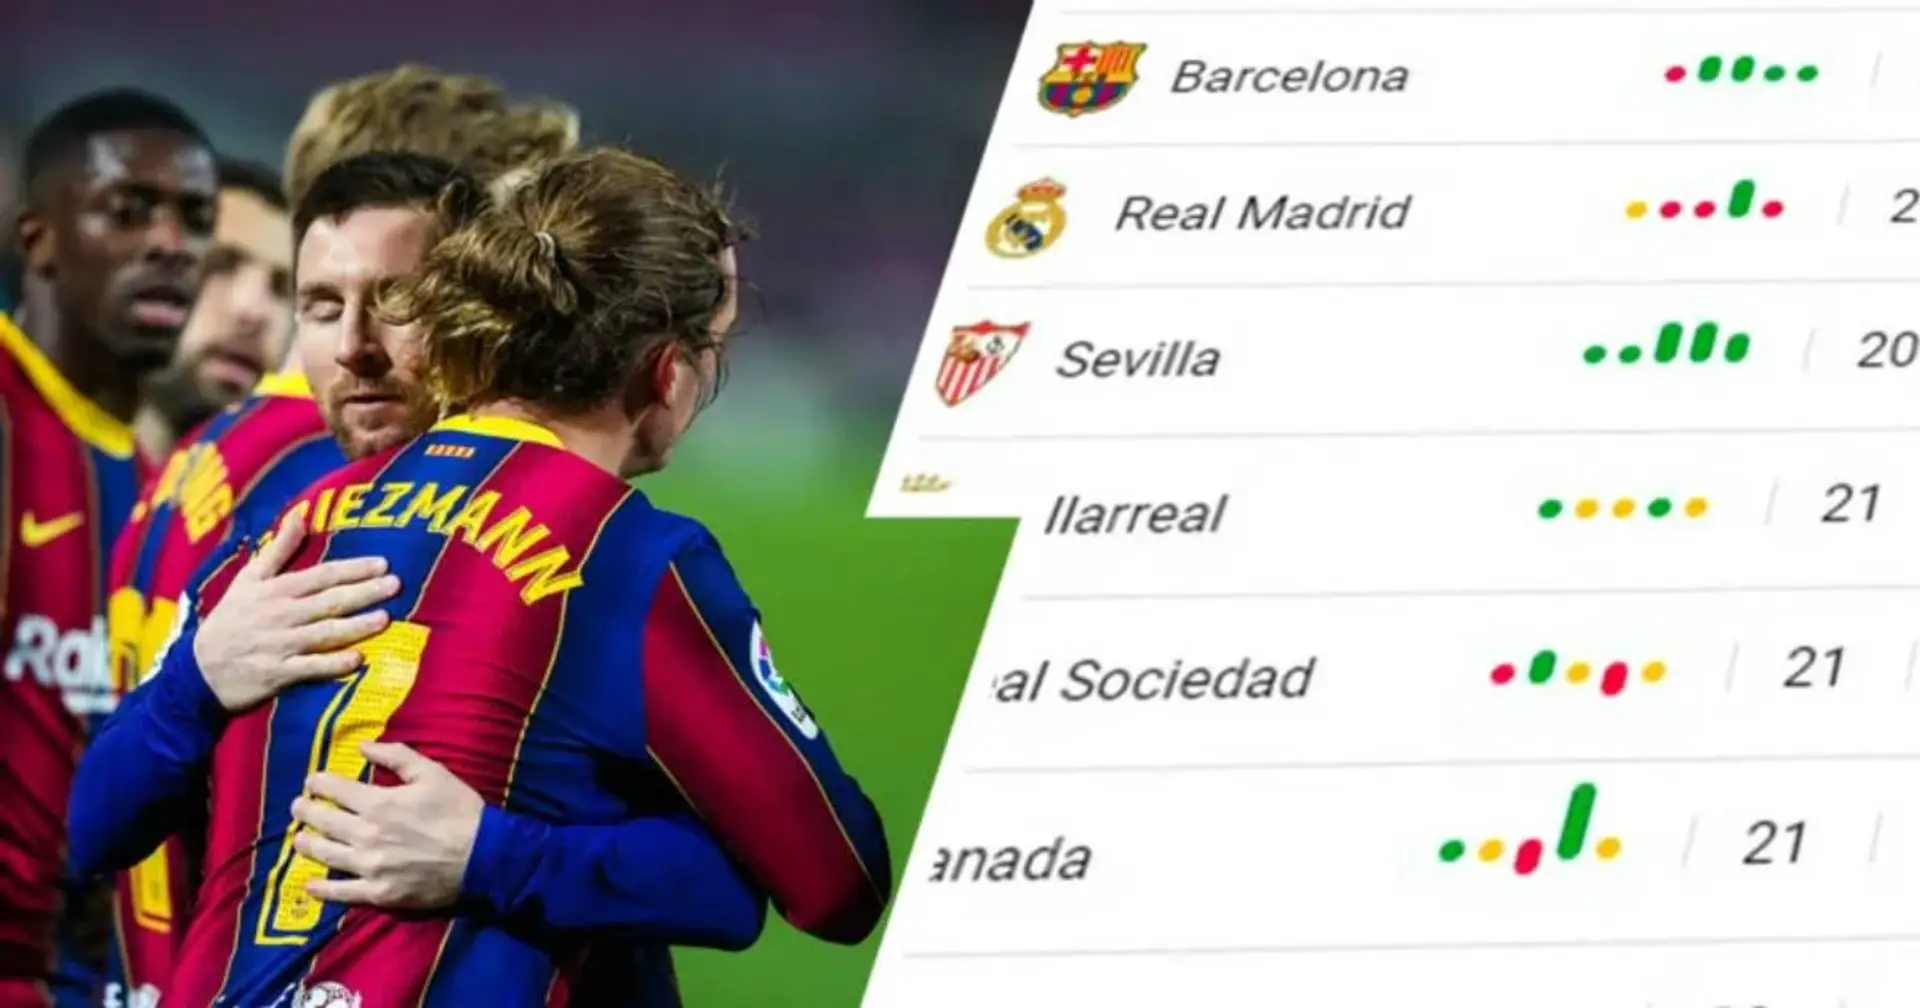 Le Barça regagne la deuxième place du classement du championnat